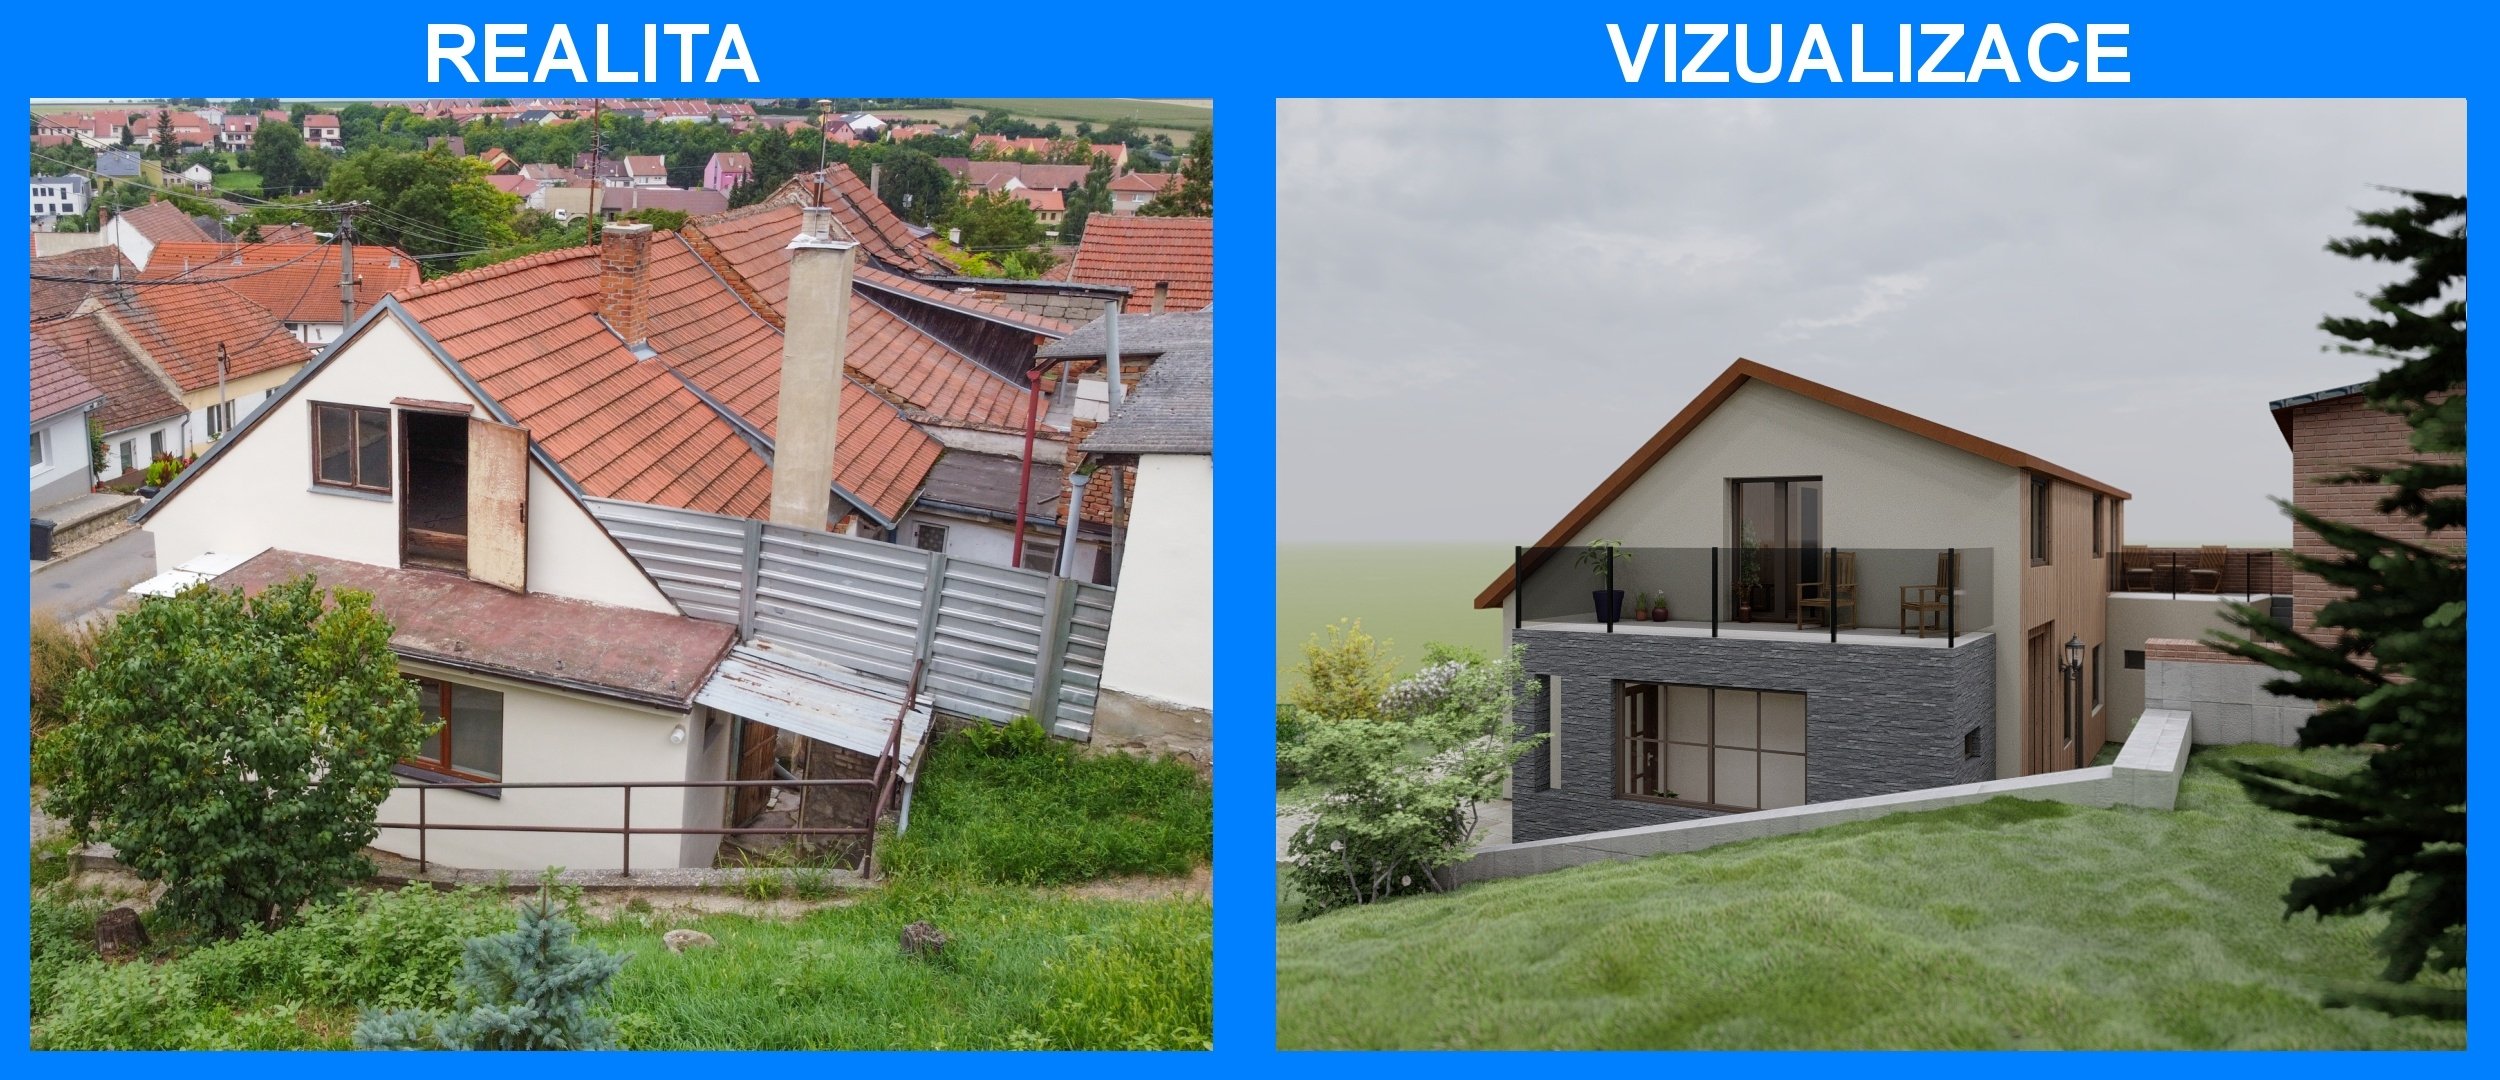 Prodej domu - realita vs. vizualizace